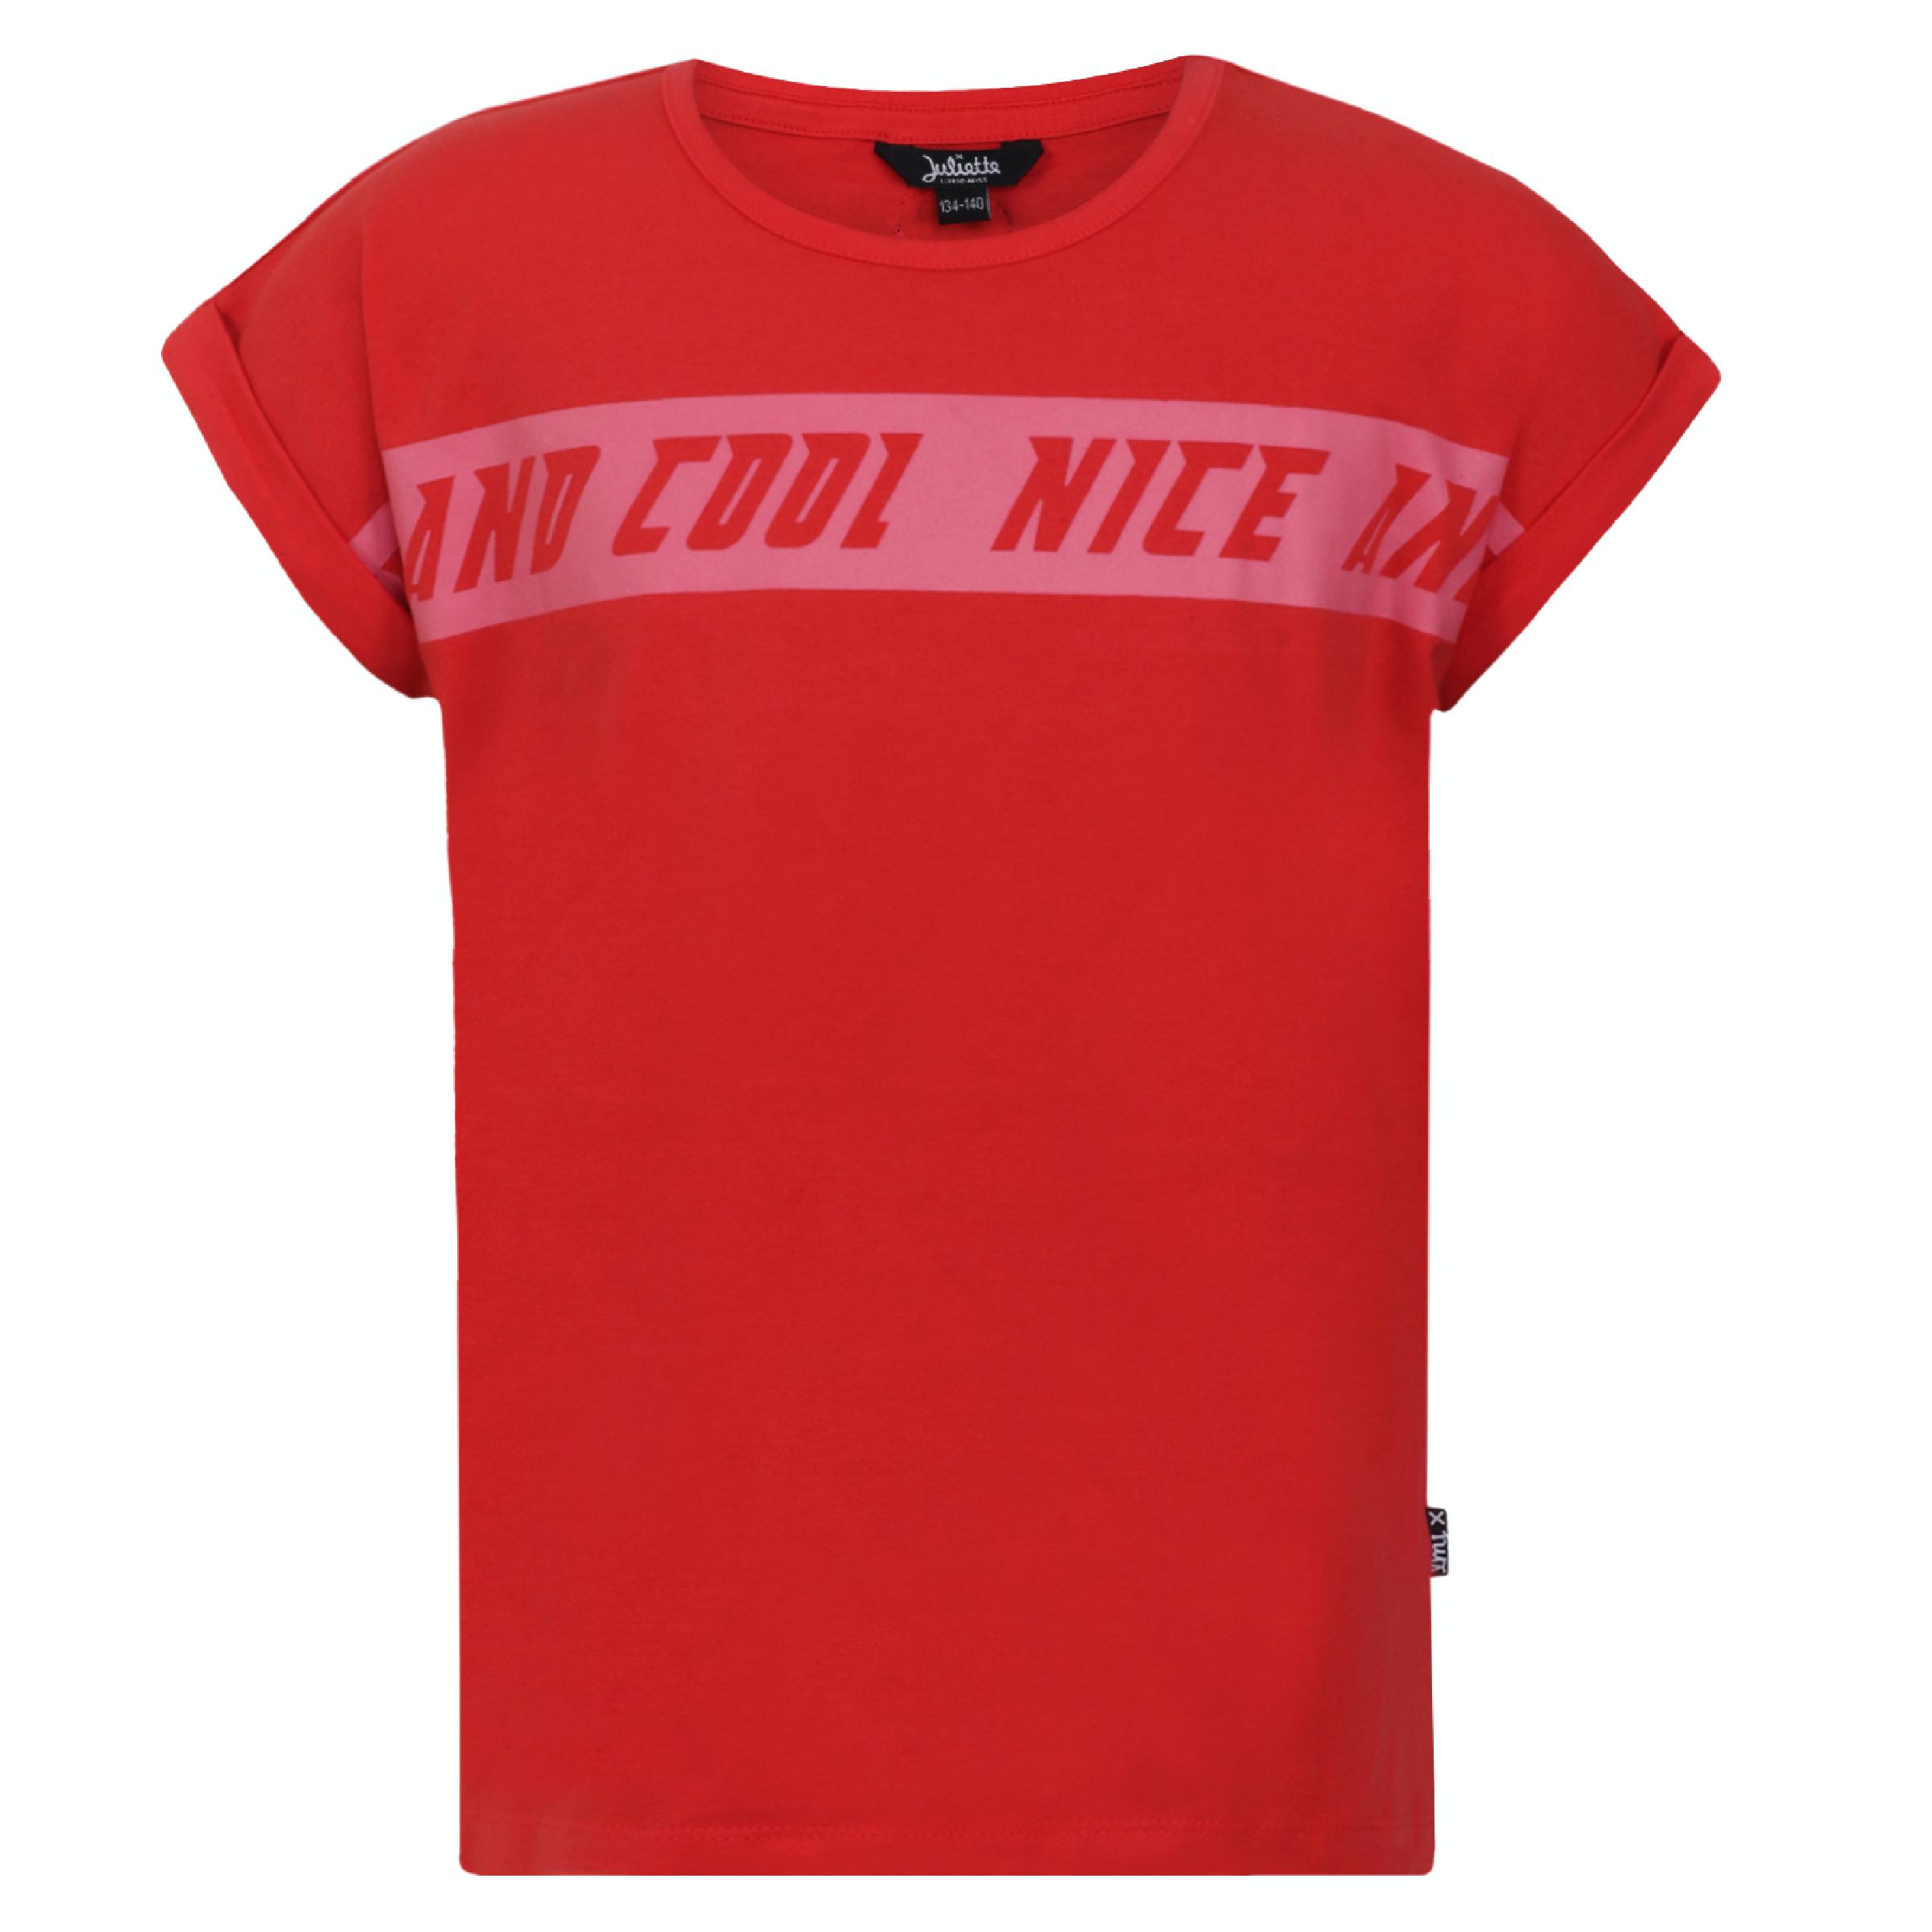 Meisjes T-shirt Nice And Cool van Miss Juliette in de kleur Rood in maat 146, 152.